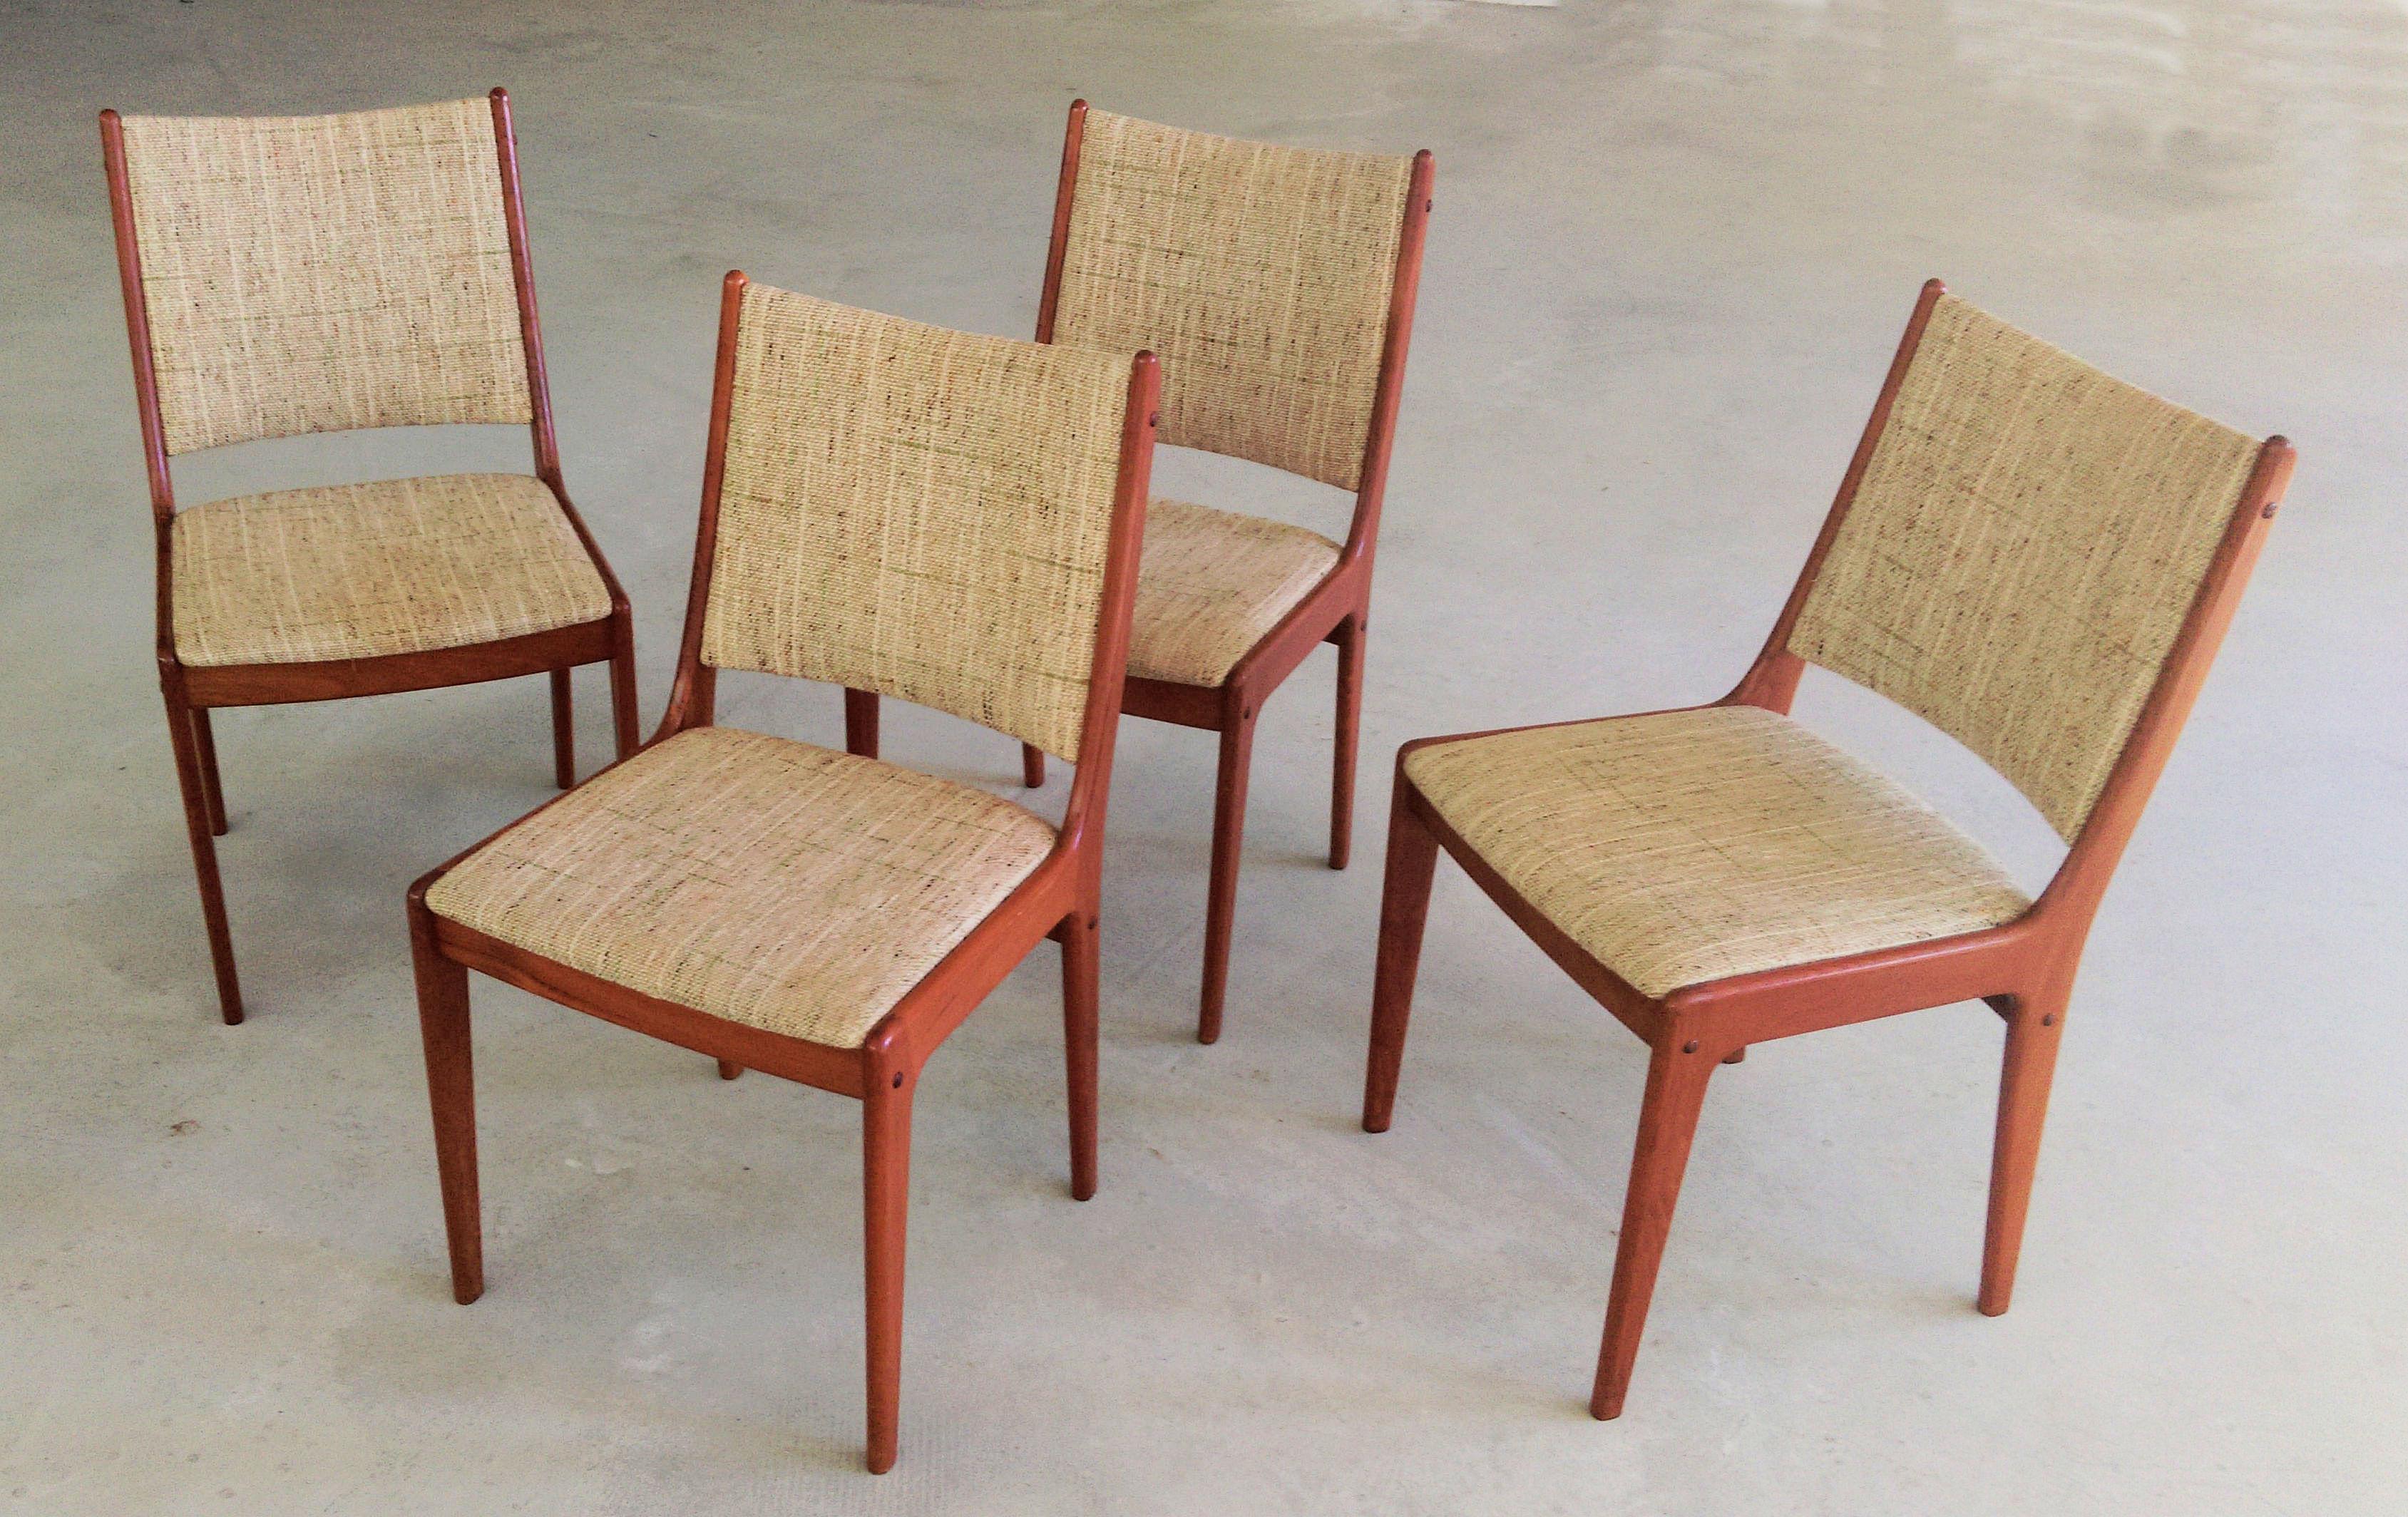 Ensemble de quatre chaises de salle à manger Johannes Andersen des années 1960 en teck, fabriquées par Uldum Møbler, Danemark.

L'ensemble de chaises de salle à manger présente un design simple et élégant qui s'intégrera parfaitement dans la plupart